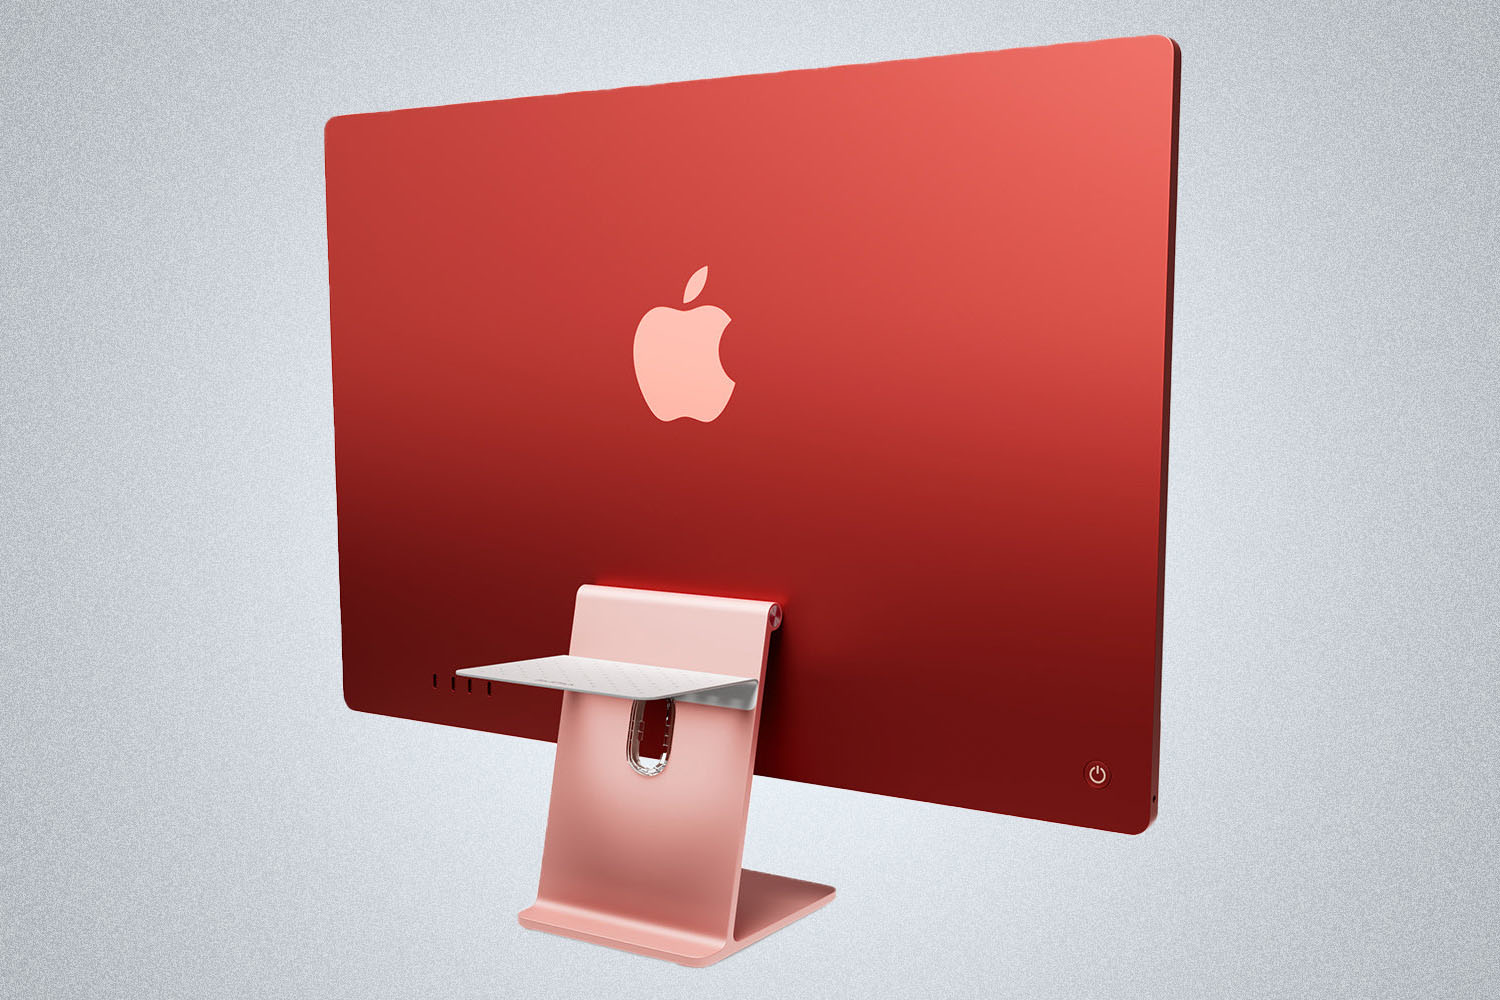 a apple iMac w/ a charging pad